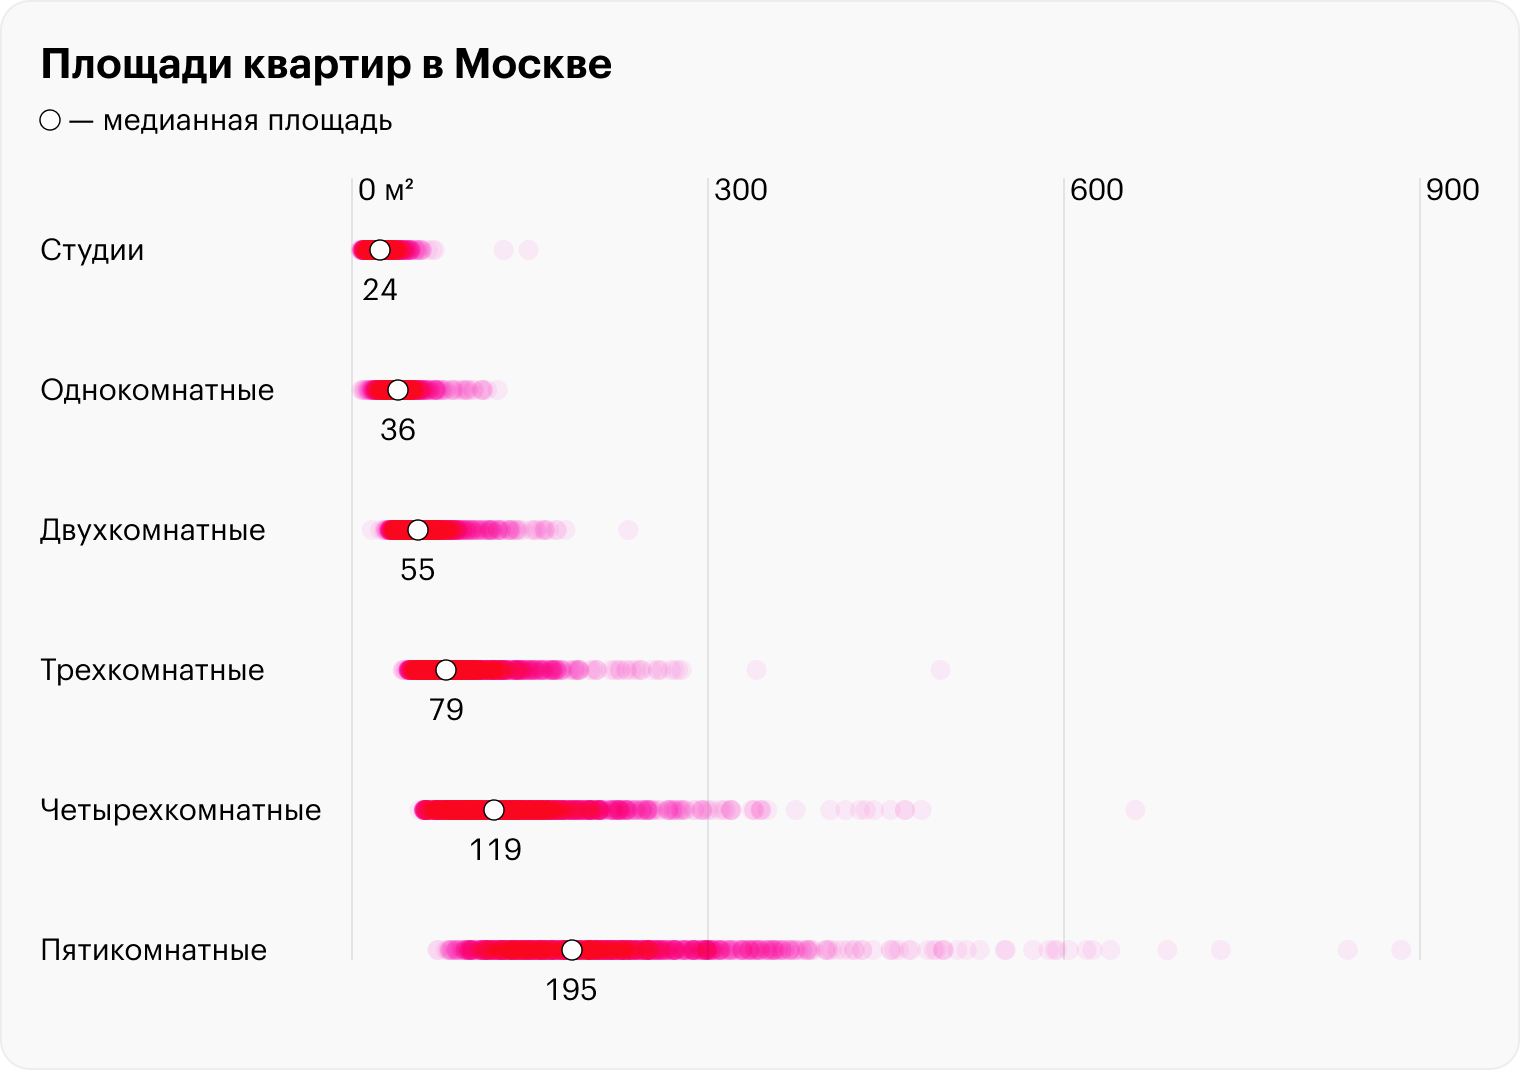 Интереснее всего выглядит разброс среди пятикомнатных квартир в Москве. Из графика следует, что с таким количеством комнат много квартир и по 100⁠—⁠200 м², и по 200⁠—⁠400 м². В студиях или однушках разница между медианной площадью и средней в разы меньше. Источник: cian.ru, расчеты автора